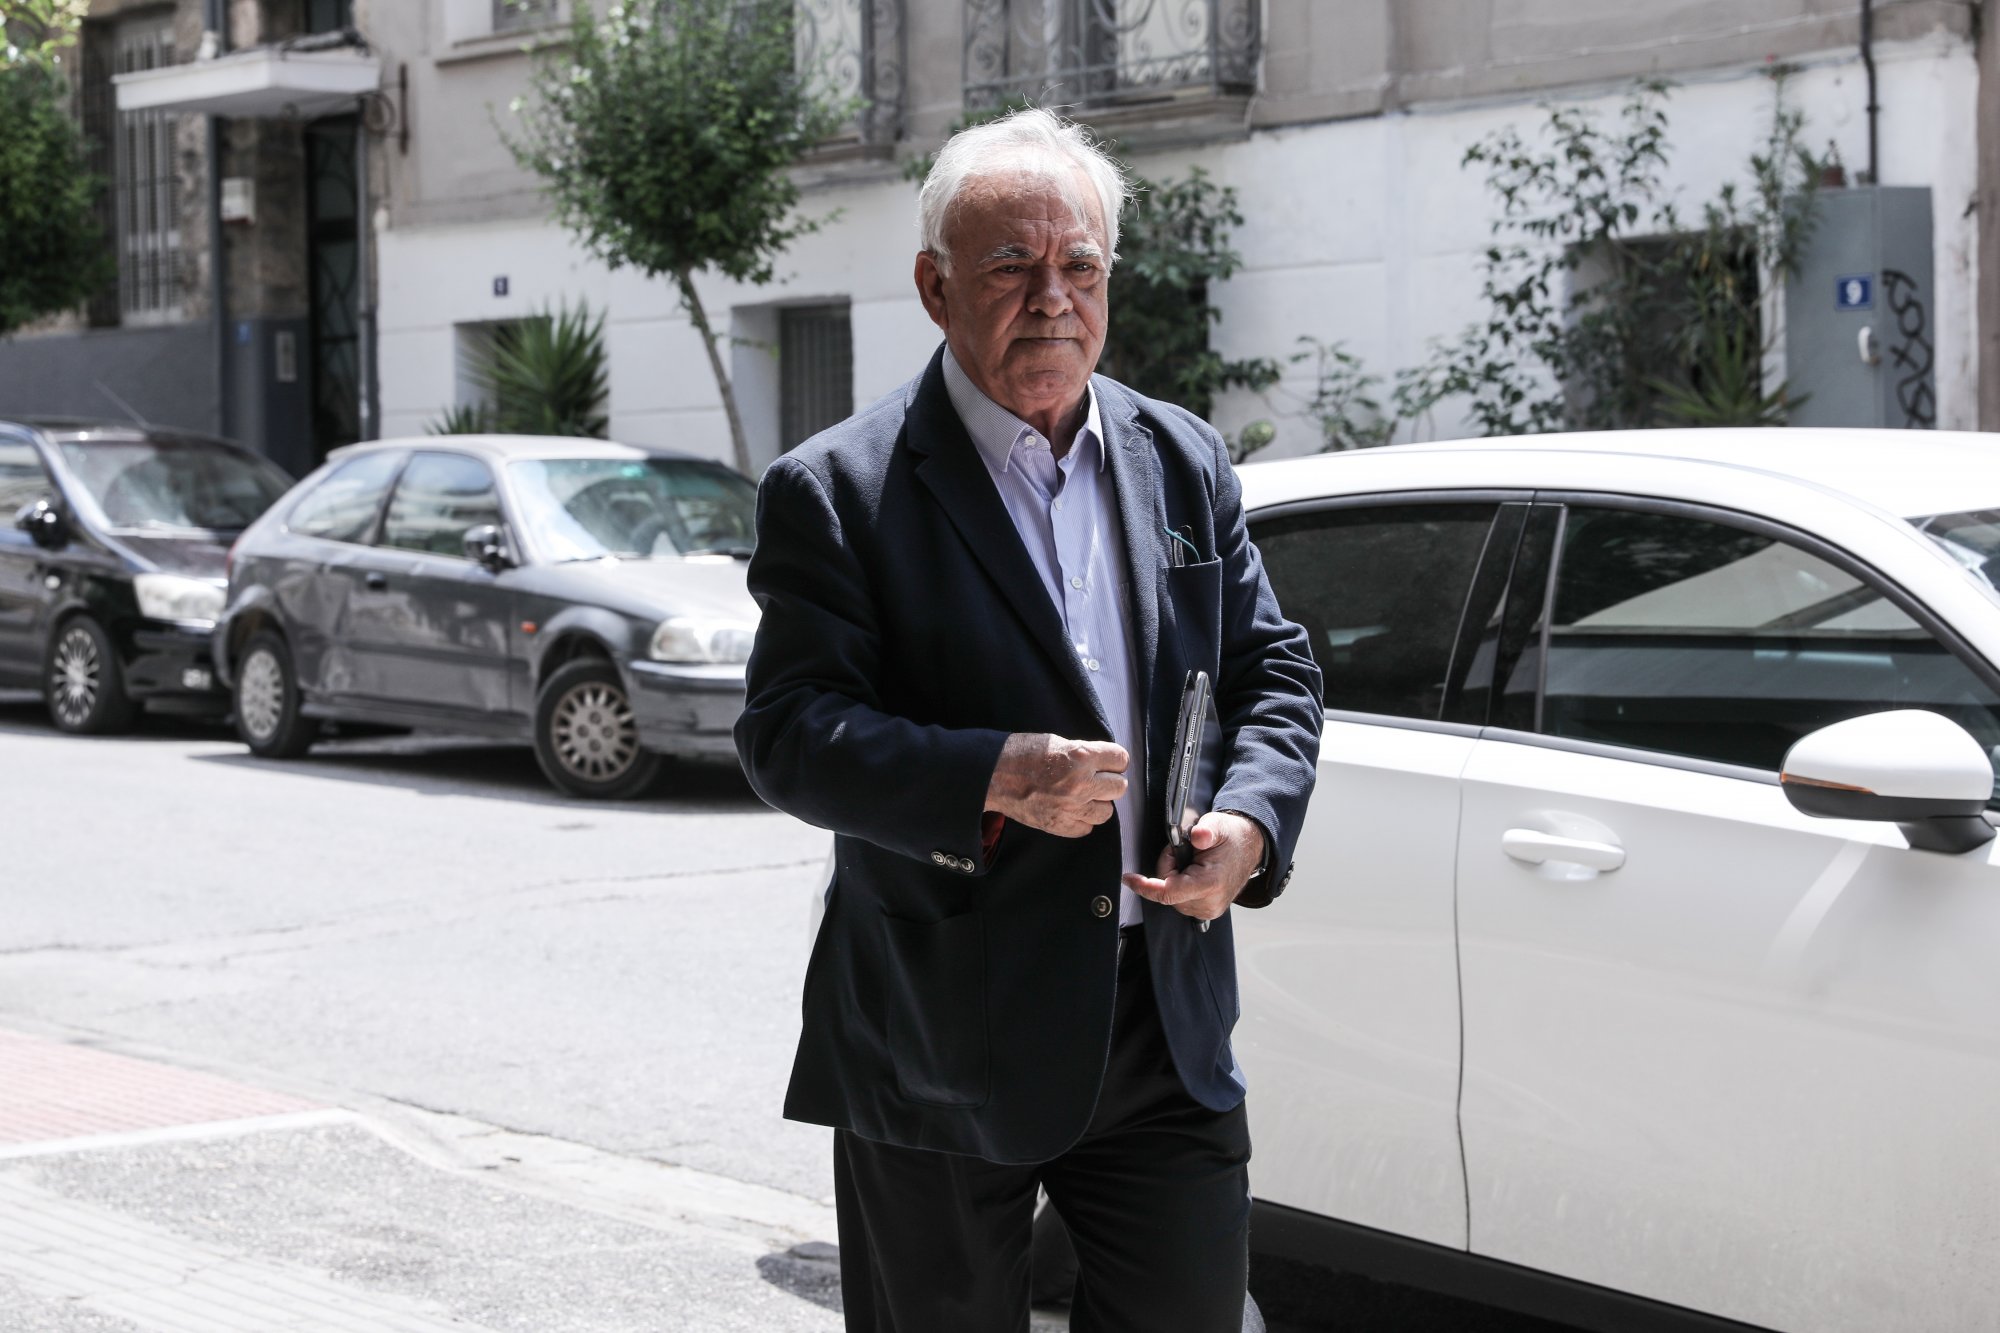 Δραγασάκης: Παραιτήθηκε από την ΚΕ ΣΥΡΙΖΑ, παραμένει μέλος του κόμματος